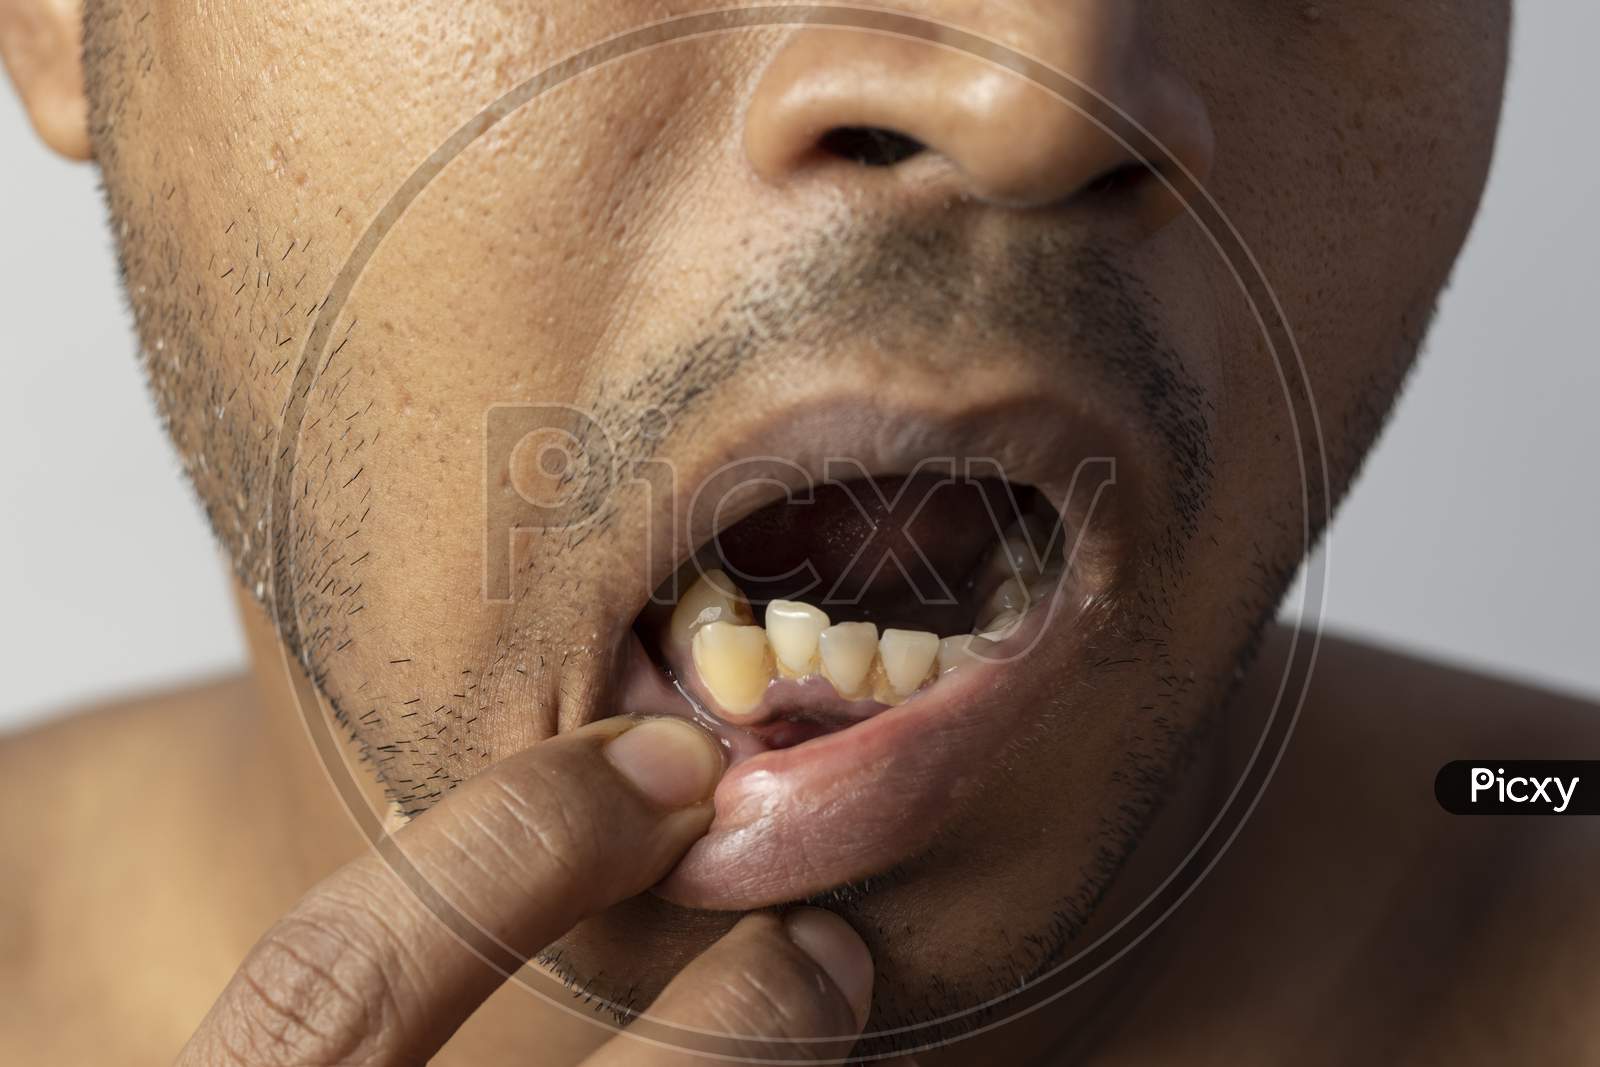 Irregular Teeth